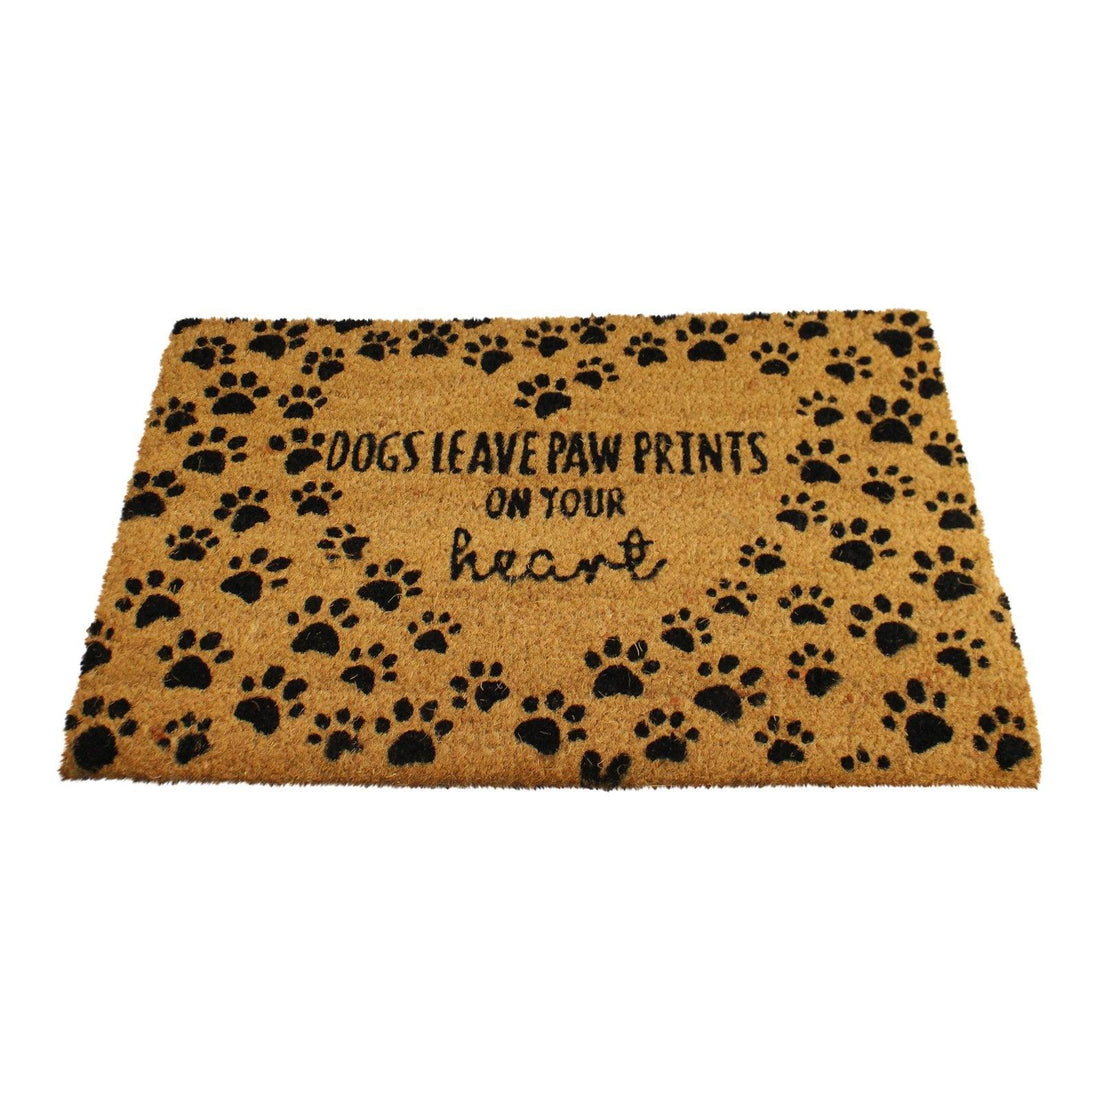 Coir Pet Design Doormat, Dogs - £21.99 - Doormats 